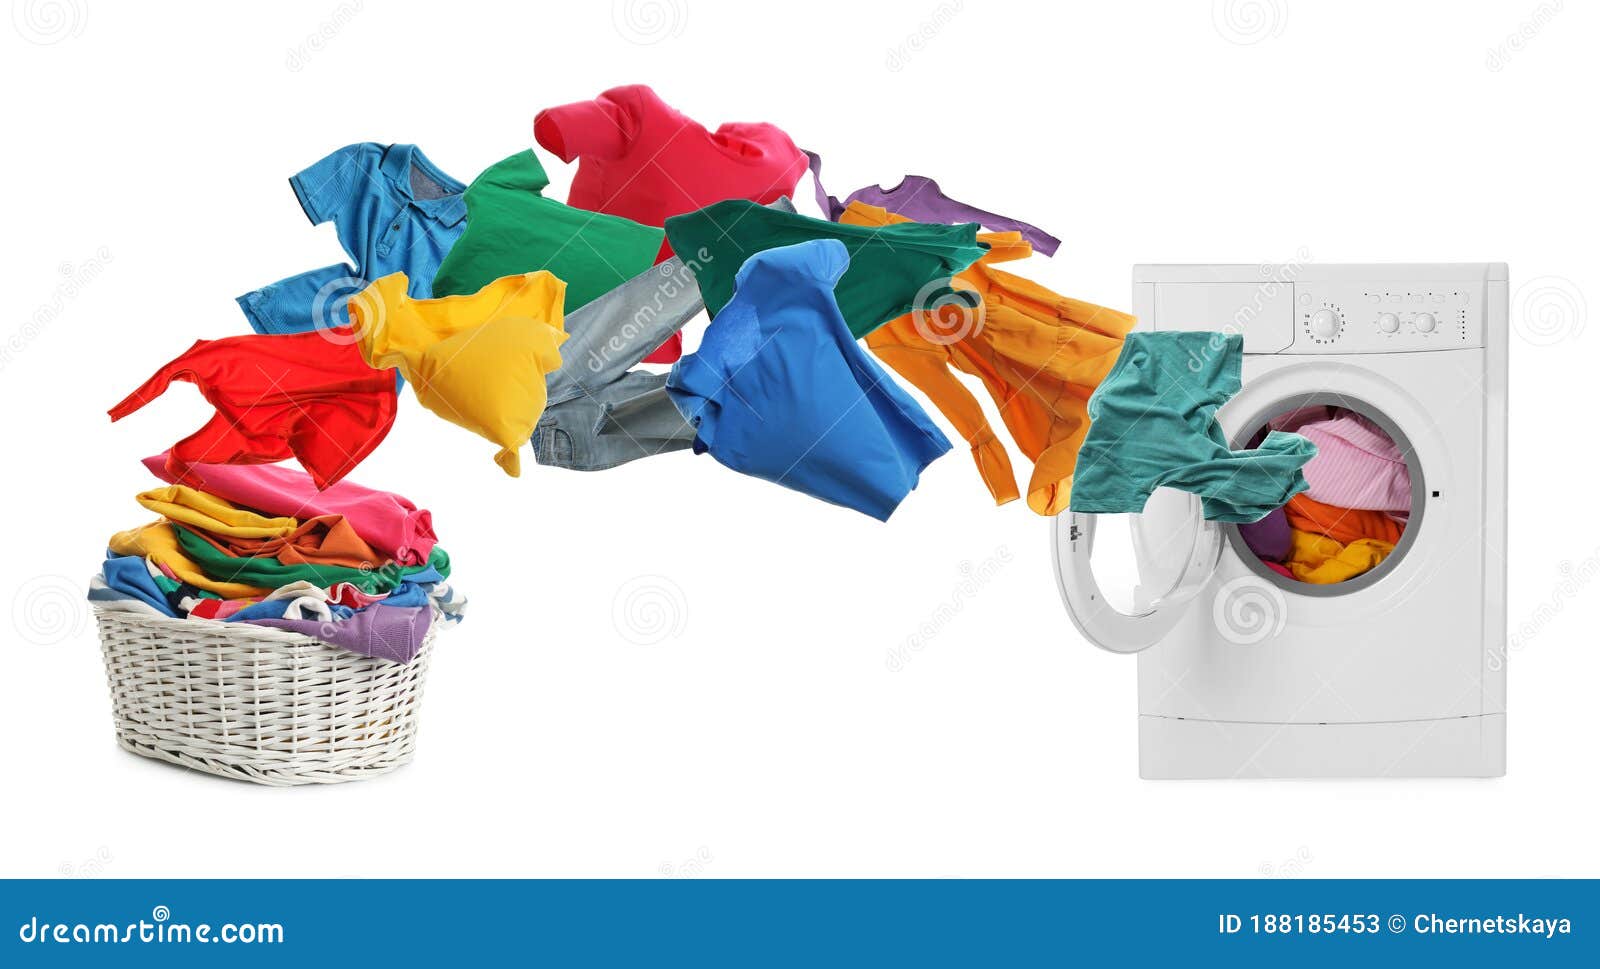 Thiết kế banner cho Background banner laundry Hình ảnh chất lượng cao